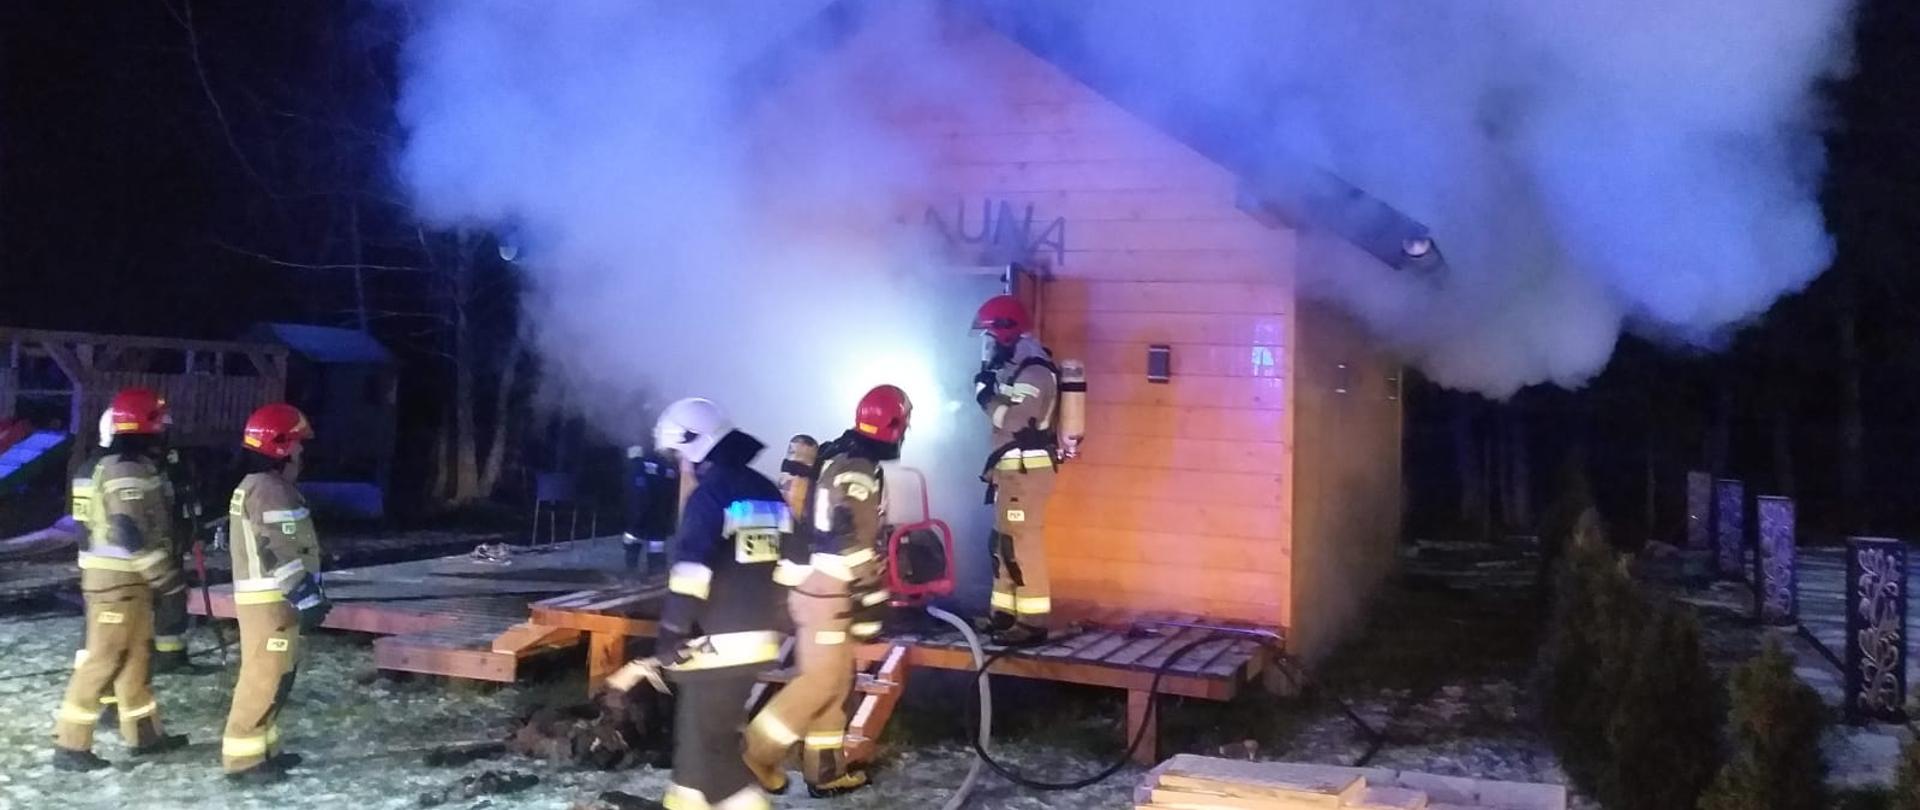 Zdjęcie przedstawia drewniany budynek sauny, z którego wydobywa się biały dym. Koło budynku widać kilku strażaków w umundurowaniu specjalnym, którzy prowadza działania gaśnicze. Zdjęcie zrobione w porze nocnej, na ziemi zalega warstwa białego śniegu.